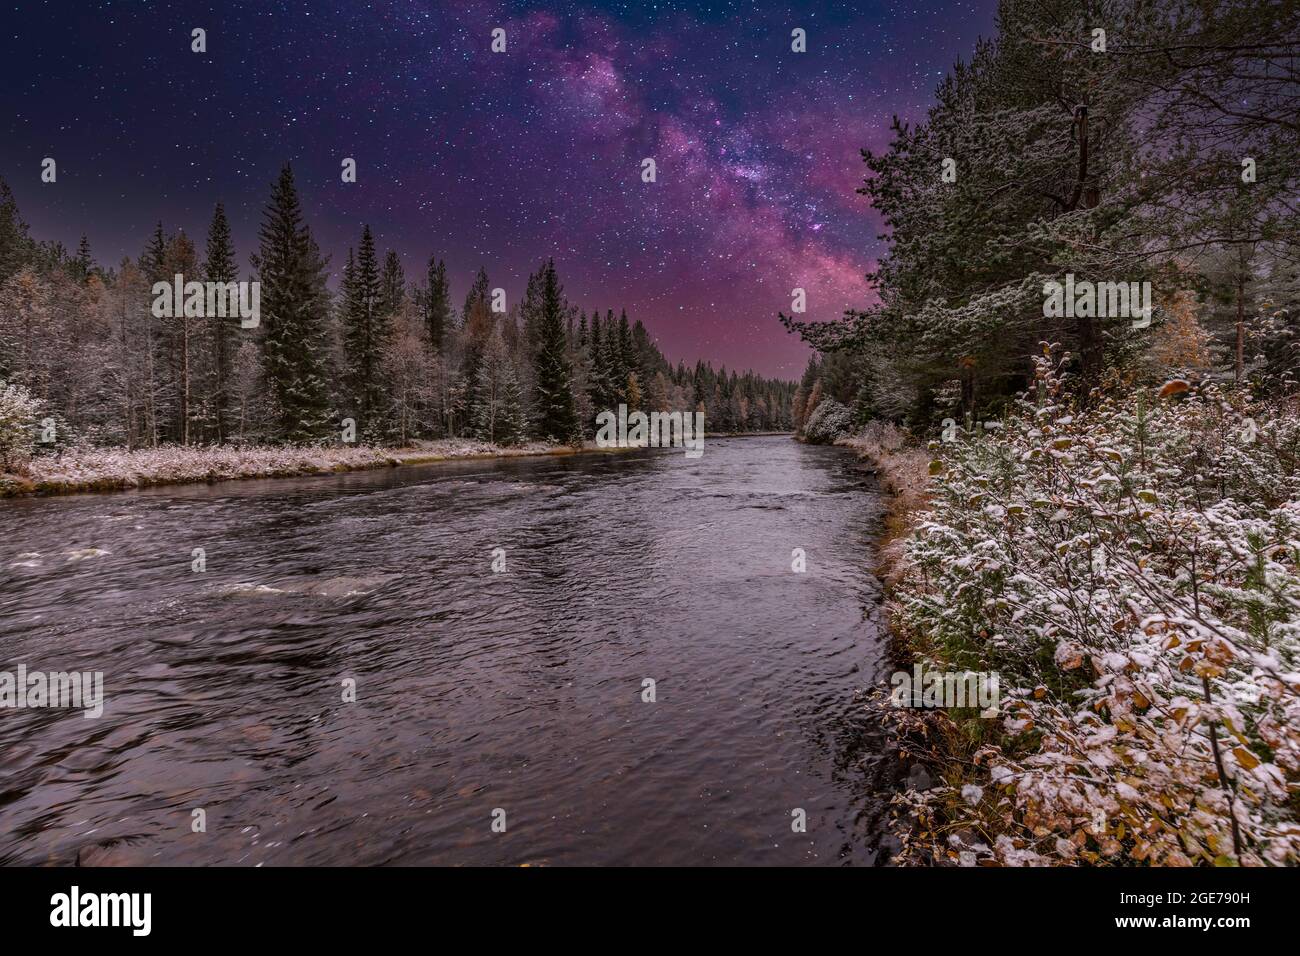 Immagine mescolata del paesaggio del fiume notturno vicino a Mörkret in Svezia con foreste di conifere lungo le rive e piccole rapide nelle acque fluenti Foto Stock